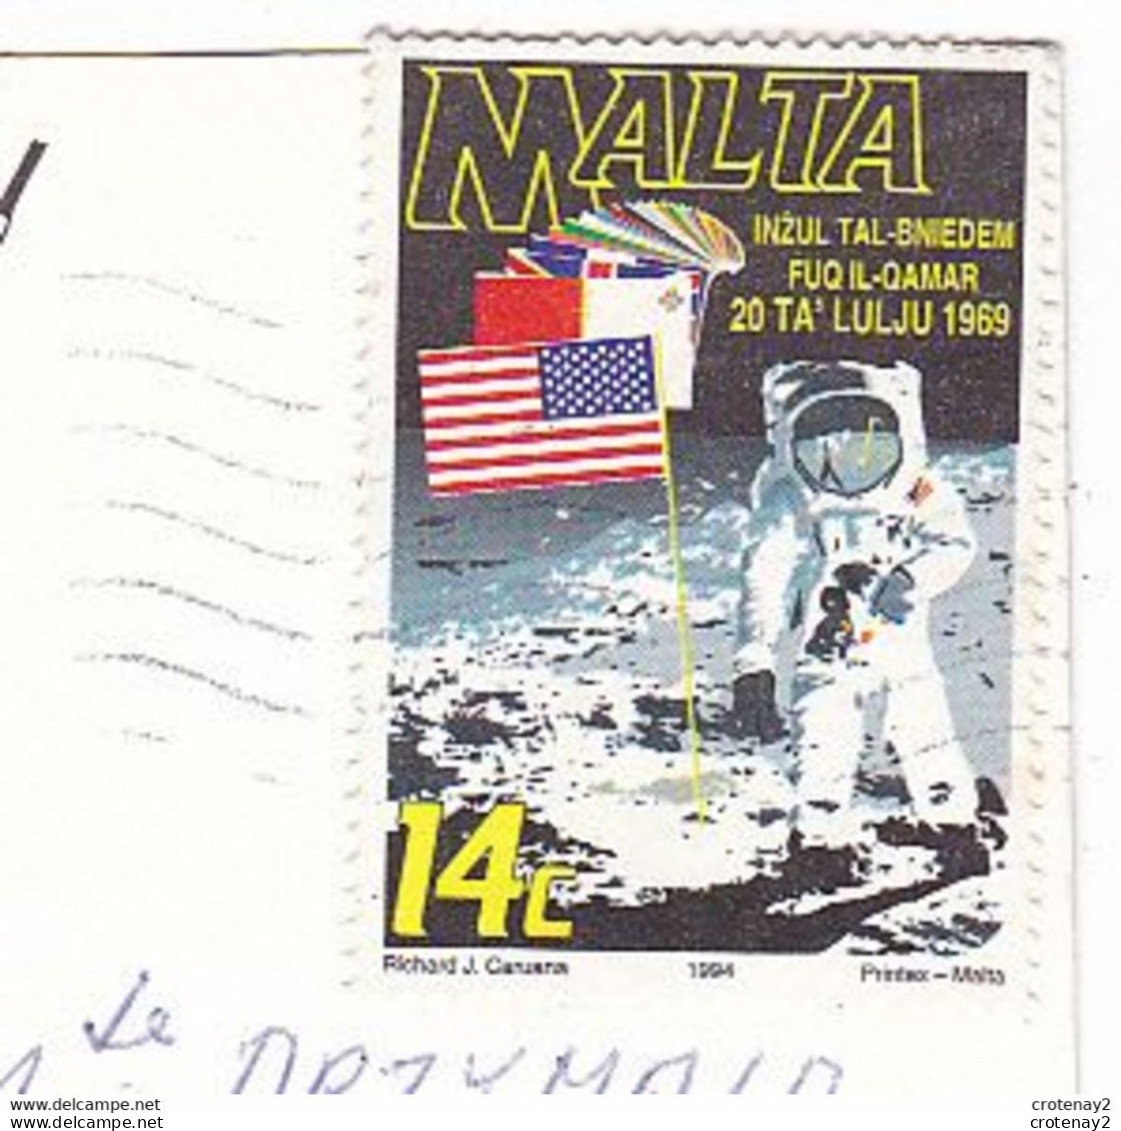 Malta Malte MDINA En 3 Vues En 1995 Attelage Cheval VOIR Timbre Homme Sur La Lune - Malte